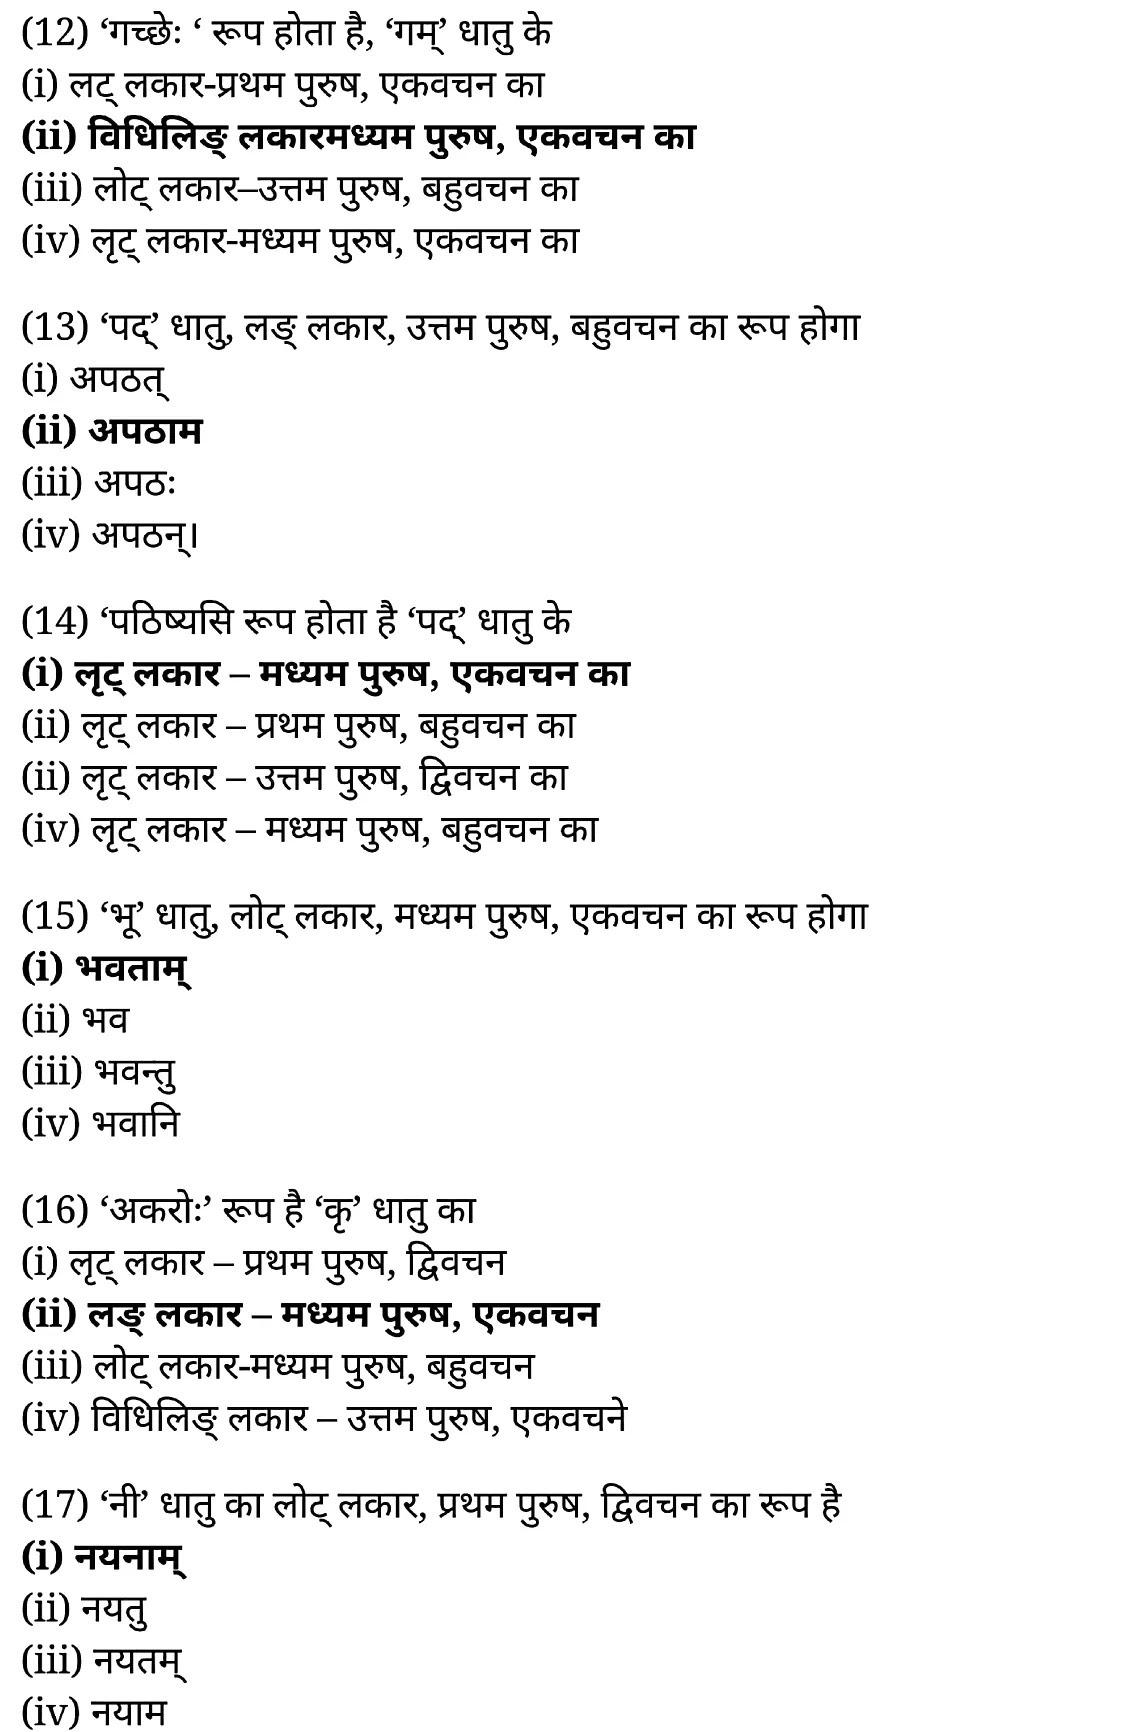 कक्षा 11 साहित्यिक हिंदी धातु-रूप-प्रकरण  के नोट्स साहित्यिक हिंदी में एनसीईआरटी समाधान,   class 11 sahityik hindi dhaatu-roop-prakaran,  class 11 sahityik hindi dhaatu-roop-prakaran ncert solutions in sahityik hindi,  class 11 sahityik hindi dhaatu-roop-prakaran notes in sahityik hindi,  class 11 sahityik hindi dhaatu-roop-prakaran question answer,  class 11 sahityik hindi dhaatu-roop-prakaran notes,  11   class dhaatu-roop-prakaran in sahityik hindi,  class 11 sahityik hindi dhaatu-roop-prakaran in sahityik hindi,  class 11 sahityik hindi dhaatu-roop-prakaran important questions in sahityik hindi,  class 11 sahityik hindi  dhaatu-roop-prakaran notes in sahityik hindi,  class 11 sahityik hindi dhaatu-roop-prakaran test,  class 11 sahityik hindi dhaatu-roop-prakaran pdf,  class 11 sahityik hindi dhaatu-roop-prakaran notes pdf,  class 11 sahityik hindi dhaatu-roop-prakaran exercise solutions,  class 11 sahityik hindi dhaatu-roop-prakaran, class 11 sahityik hindi dhaatu-roop-prakaran notes study rankers,  class 11 sahityik hindi dhaatu-roop-prakaran notes,  class 11 sahityik hindi  dhaatu-roop-prakaran notes,   dhaatu-roop-prakaran 11  notes pdf, dhaatu-roop-prakaran class 11  notes  ncert,  dhaatu-roop-prakaran class 11 pdf,   dhaatu-roop-prakaran  book,    dhaatu-roop-prakaran quiz class 11  ,       11  th dhaatu-roop-prakaran    book up board,       up board 11  th dhaatu-roop-prakaran notes,  कक्षा 11 साहित्यिक हिंदी धातु-रूप-प्रकरण , कक्षा 11 साहित्यिक हिंदी का धातु-रूप-प्रकरण , कक्षा 11 साहित्यिक हिंदी  के धातु-रूप-प्रकरण  के नोट्स हिंदी में, कक्षा 11 का साहित्यिक हिंदी धातु-रूप-प्रकरण का प्रश्न उत्तर, कक्षा 11 साहित्यिक हिंदी धातु-रूप-प्रकरण  के नोट्स, 11 कक्षा साहित्यिक हिंदी धातु-रूप-प्रकरण   साहित्यिक हिंदी में, कक्षा 11 साहित्यिक हिंदी धातु-रूप-प्रकरण हिंदी में, कक्षा 11 साहित्यिक हिंदी धातु-रूप-प्रकरण  महत्वपूर्ण प्रश्न हिंदी में, कक्षा 11 के साहित्यिक हिंदी के नोट्स हिंदी में,साहित्यिक हिंदी  कक्षा 11 नोट्स pdf,  साहित्यिक हिंदी  कक्षा 11 नोट्स 2021 ncert,  साहित्यिक हिंदी  कक्षा 11 pdf,  साहित्यिक हिंदी  पुस्तक,  साहित्यिक हिंदी की बुक,  साहित्यिक हिंदी  प्रश्नोत्तरी class 11  , 11   वीं साहित्यिक हिंदी  पुस्तक up board,  बिहार बोर्ड 11  पुस्तक वीं साहित्यिक हिंदी नोट्स,    11th sahityik hindi dhaatu-roop-prakaran   book in hindi, 11th sahityik hindi dhaatu-roop-prakaran notes in hindi, cbse books for class 11  , cbse books in hindi, cbse ncert books, class 11   sahityik hindi dhaatu-roop-prakaran   notes in hindi,  class 11   sahityik hindi ncert solutions, sahityik hindi dhaatu-roop-prakaran 2020, sahityik hindi dhaatu-roop-prakaran  2021, sahityik hindi dhaatu-roop-prakaran   2022, sahityik hindi dhaatu-roop-prakaran  book class 11  , sahityik hindi dhaatu-roop-prakaran book in hindi, sahityik hindi dhaatu-roop-prakaran  class 11   in hindi, sahityik hindi dhaatu-roop-prakaran   notes for class 11   up board in hindi, ncert all books, ncert app in sahityik hindi, ncert book solution, ncert books class 10, ncert books class 11  , ncert books for class 7, ncert books for upsc in hindi, ncert books in hindi class 10, ncert books in hindi for class 11 sahityik hindi dhaatu-roop-prakaran  , ncert books in hindi for class 6, ncert books in hindi pdf, ncert class 11 sahityik hindi book, ncert english book, ncert sahityik hindi dhaatu-roop-prakaran  book in hindi, ncert sahityik hindi dhaatu-roop-prakaran  books in hindi pdf, ncert sahityik hindi dhaatu-roop-prakaran class 11 ,    ncert in hindi,  old ncert books in hindi, online ncert books in hindi,  up board 11  th, up board 11  th syllabus, up board class 10 sahityik hindi book, up board class 11   books, up board class 11   new syllabus, up board intermediate sahityik hindi dhaatu-roop-prakaran  syllabus, up board intermediate syllabus 2021, Up board Master 2021, up board model paper 2021, up board model paper all subject, up board new syllabus of class 11  th sahityik hindi dhaatu-roop-prakaran ,